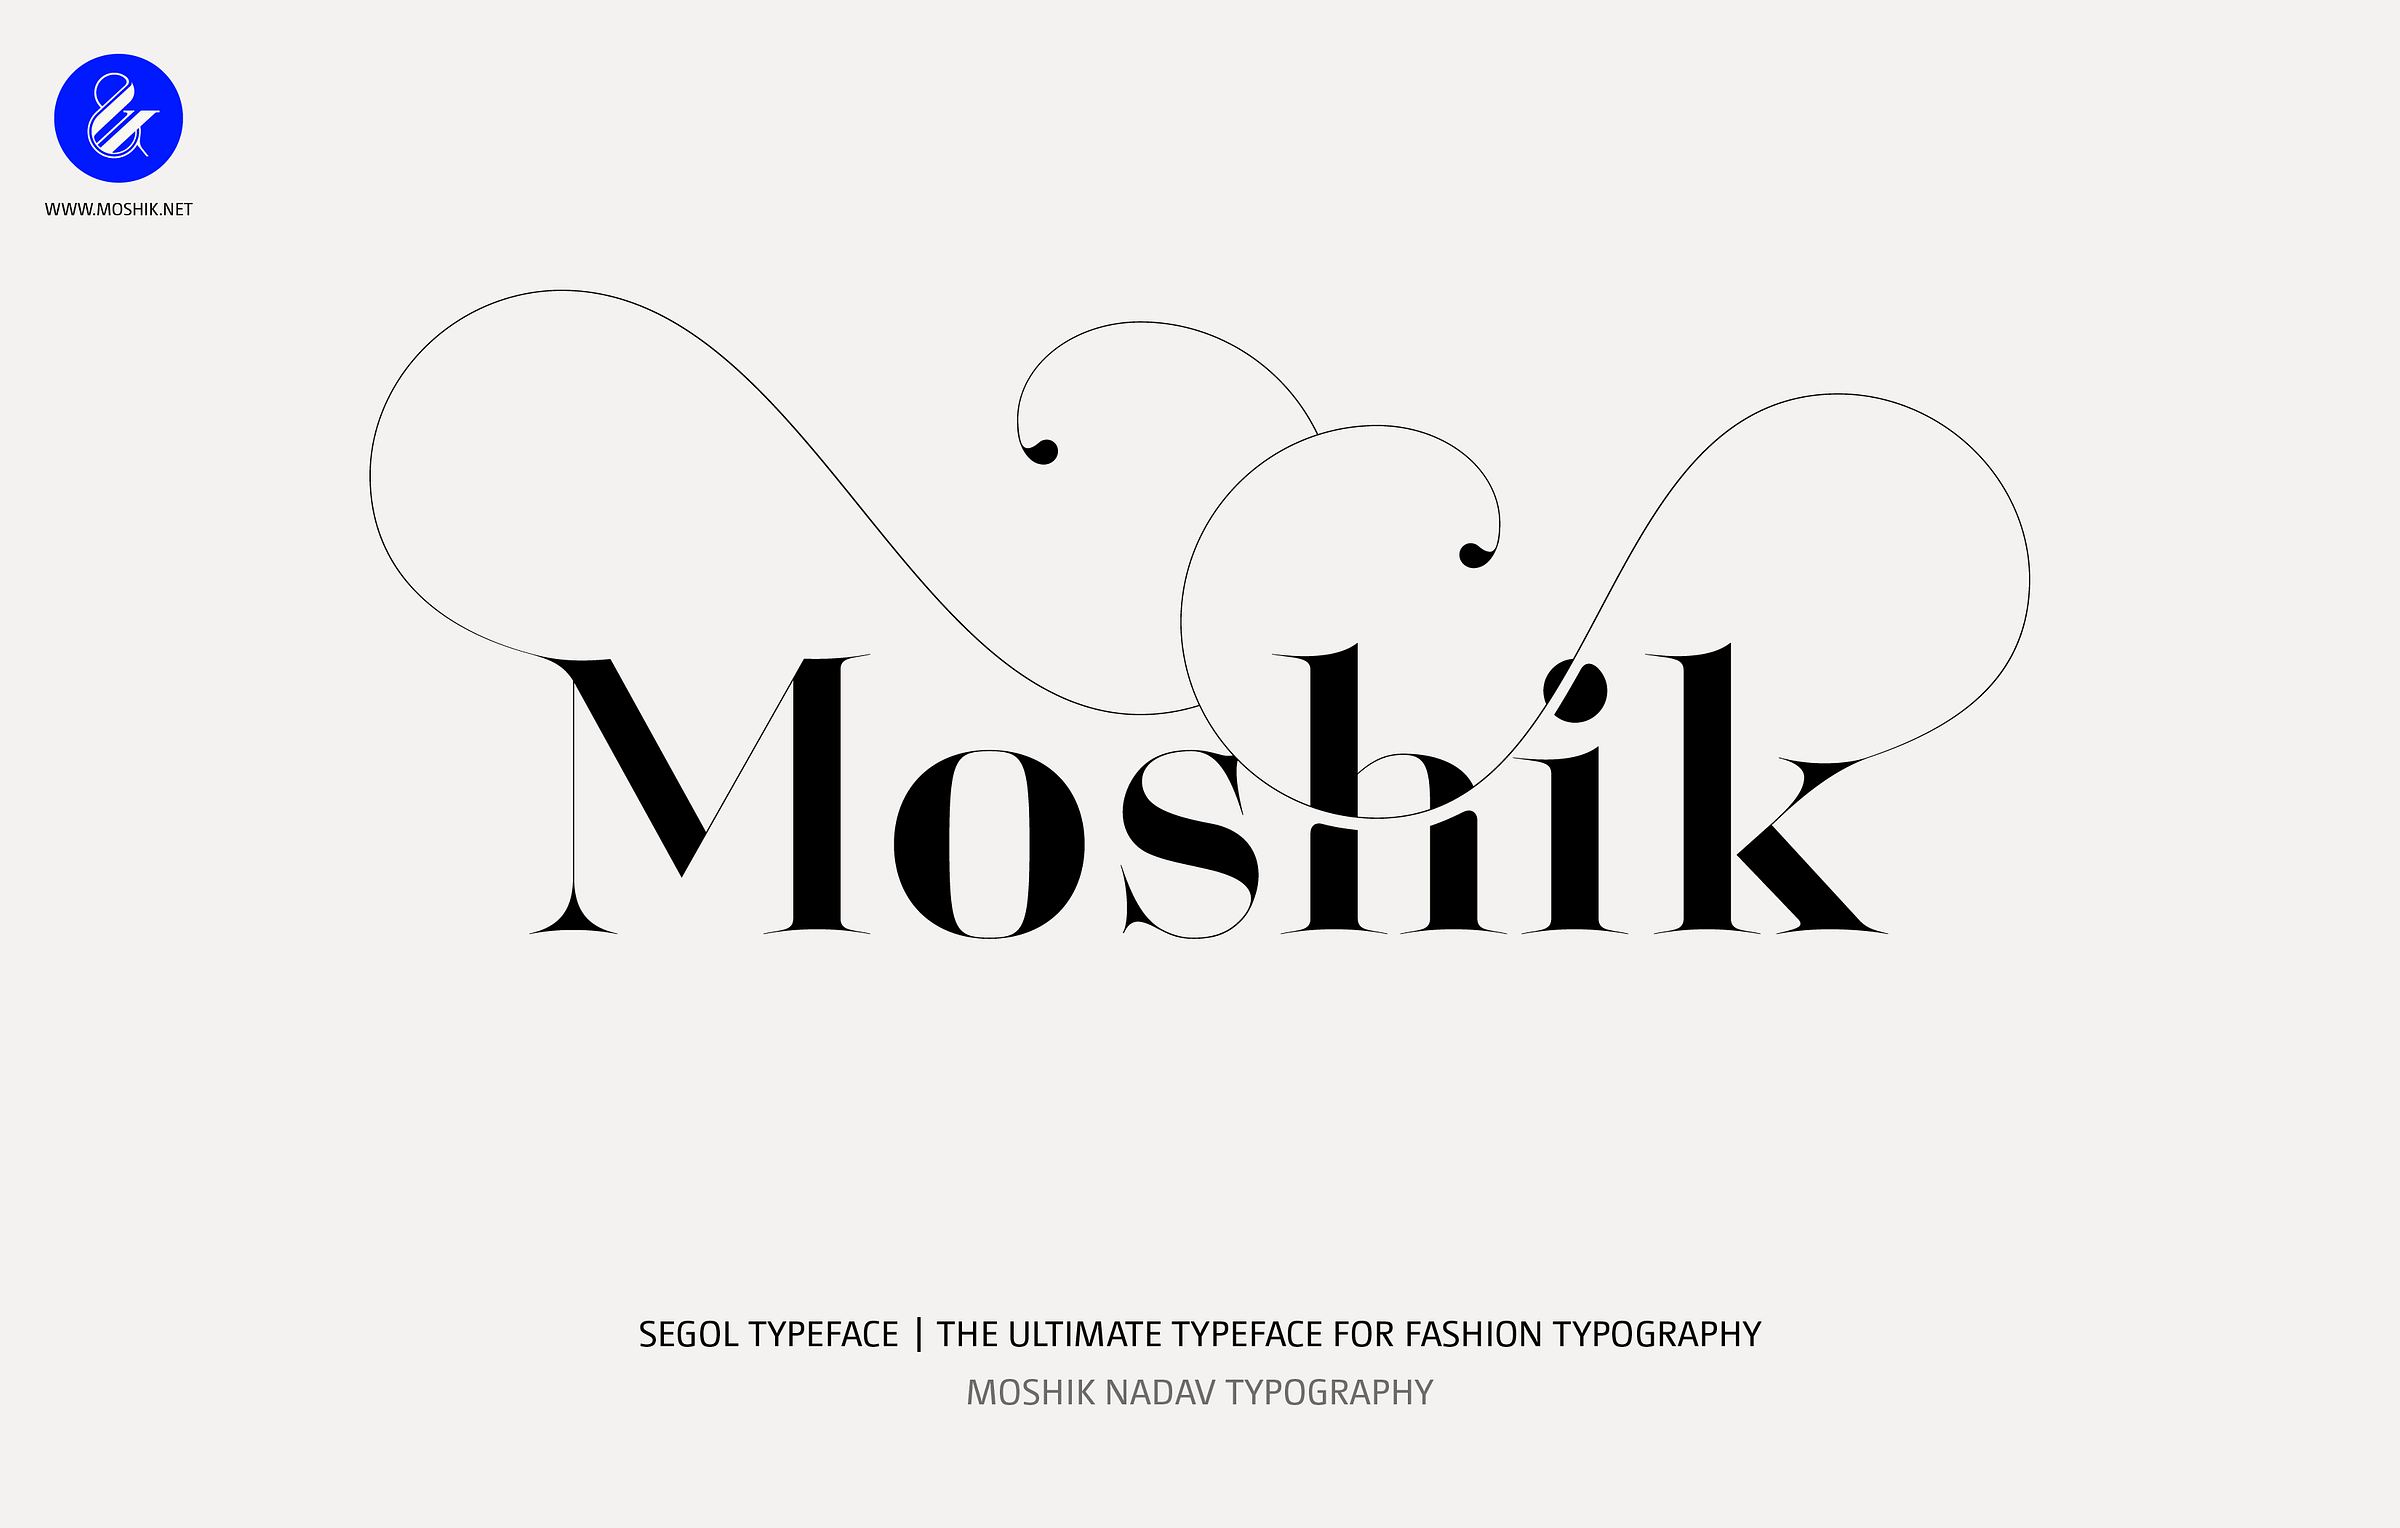 Moshik Made With Segol Typeface By Moshik Nadav Typography By Moshik Nadav Typography On Dribbble 9167